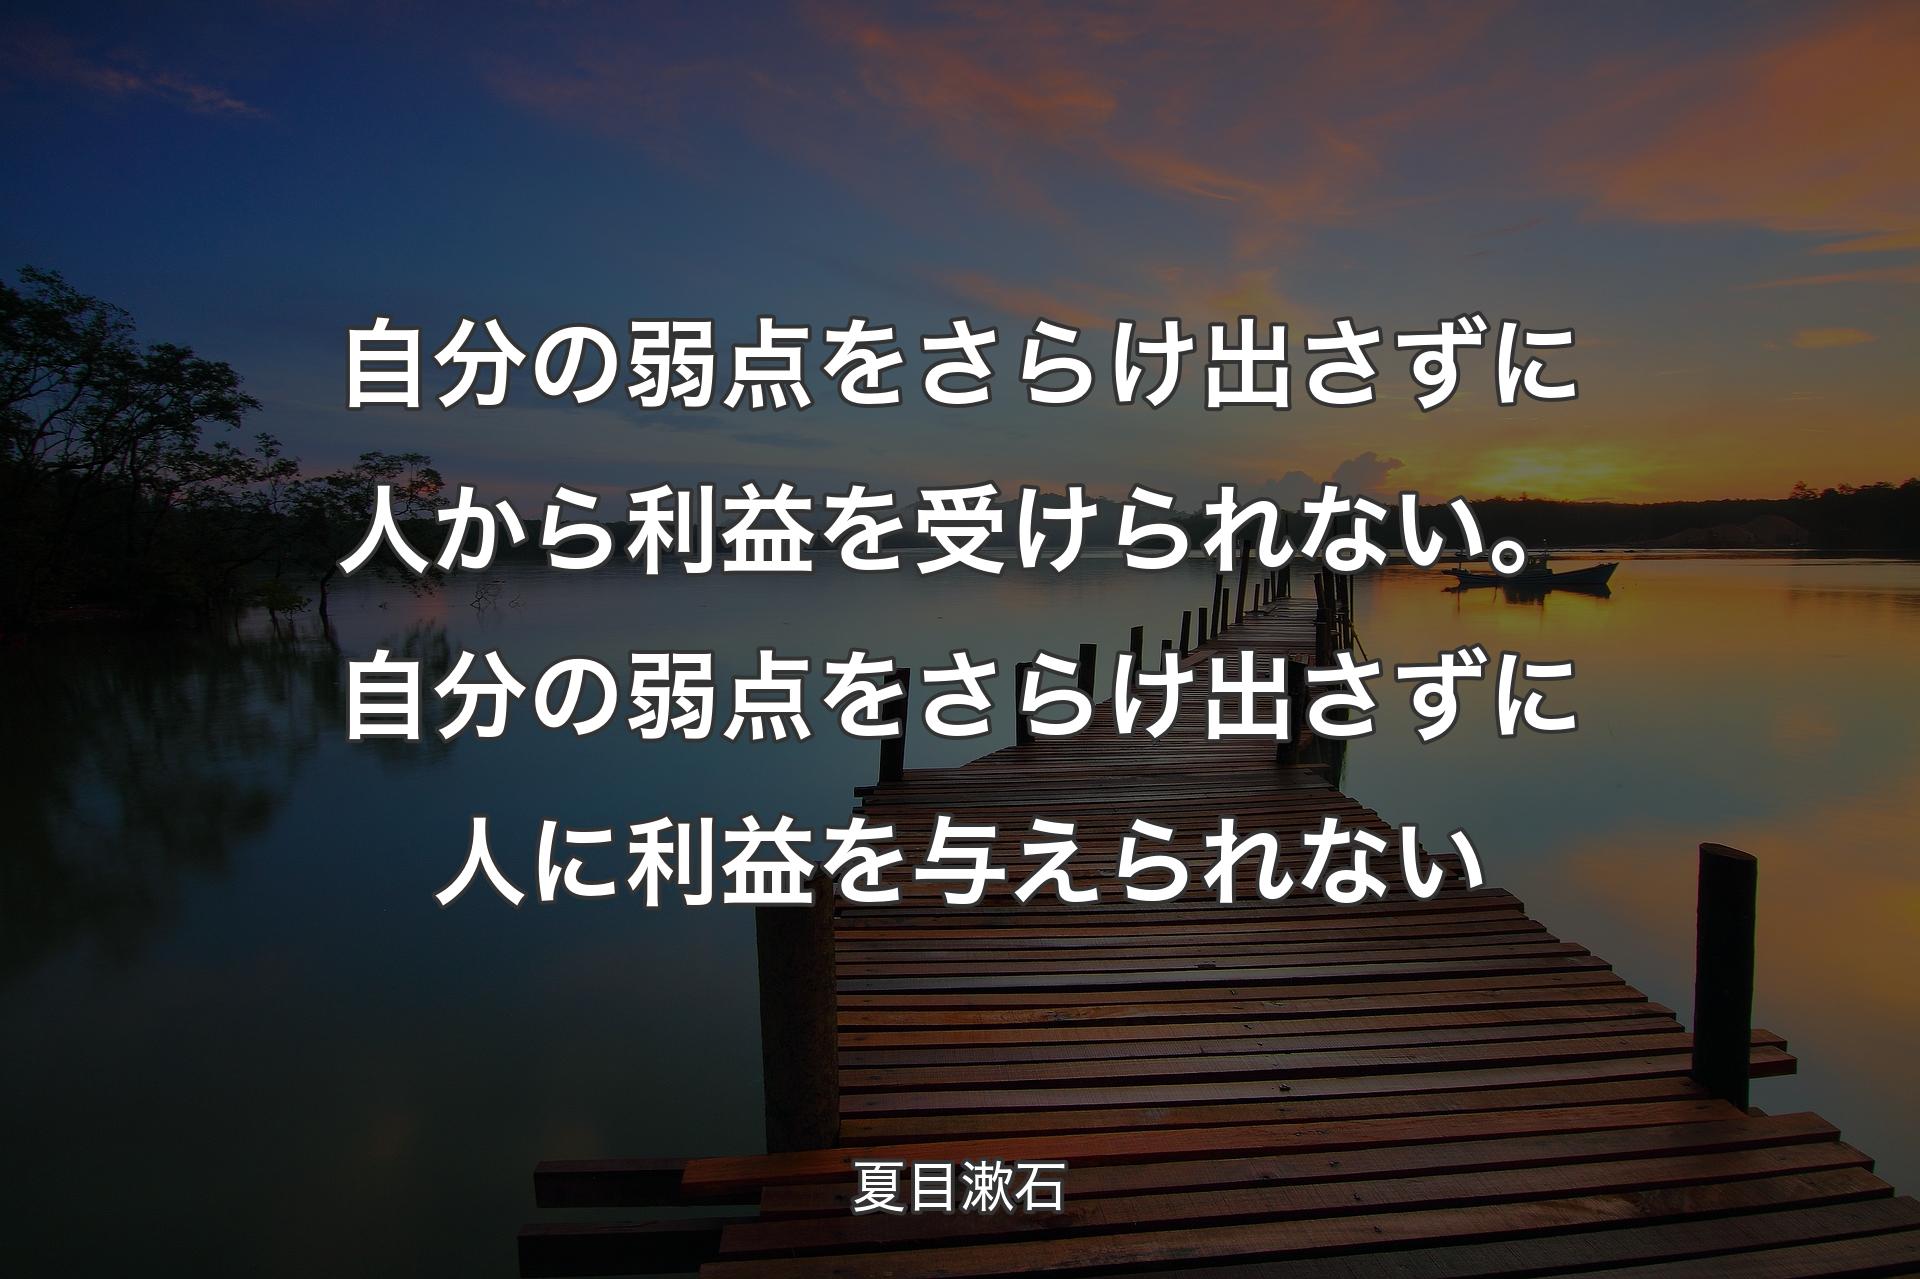 【背景3】自分の弱点をさらけ出さずに人から利益を受けられない。自分の弱点をさらけ出さずに人に利益を与えられない - 夏目漱石